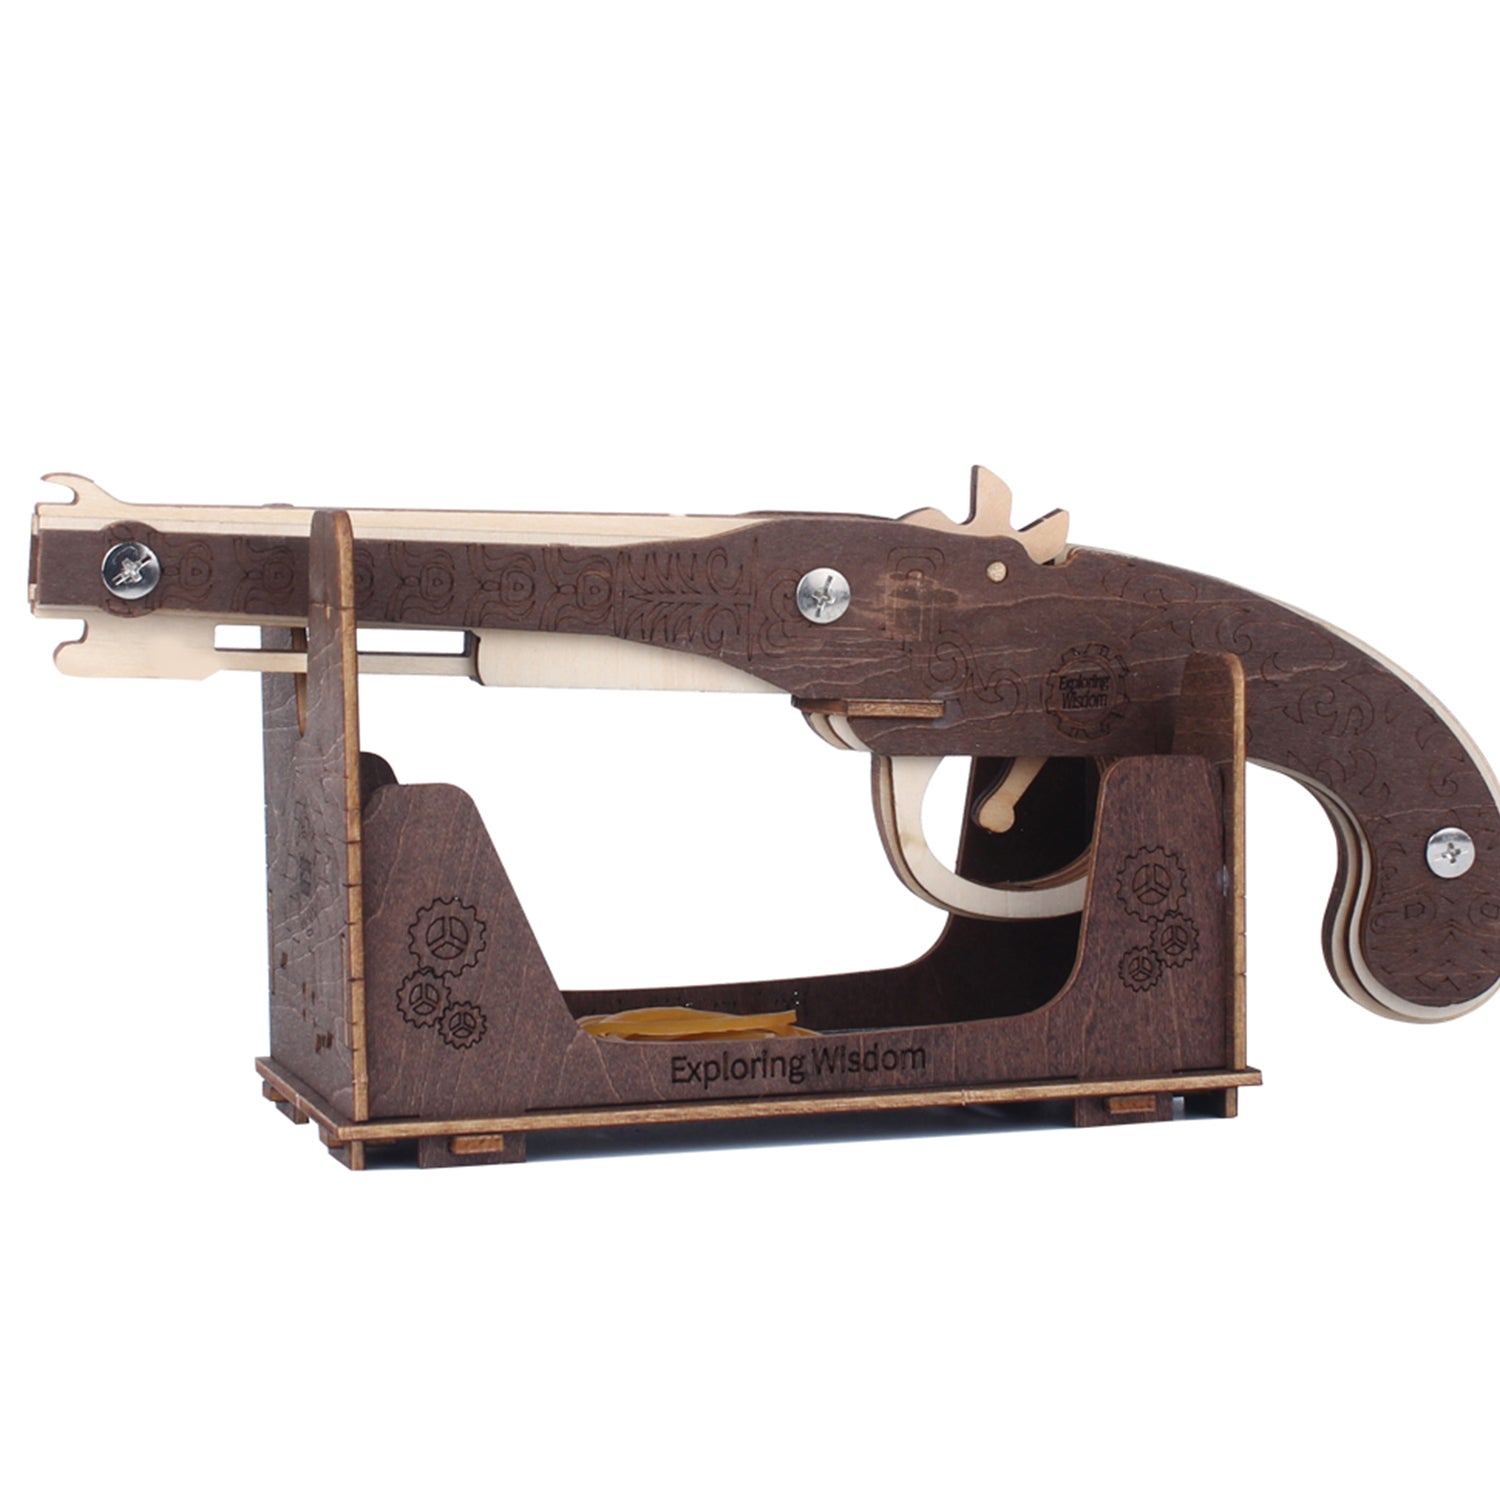 TSZH 007 DIY Guns Kit |Birthday Gift | Hobby